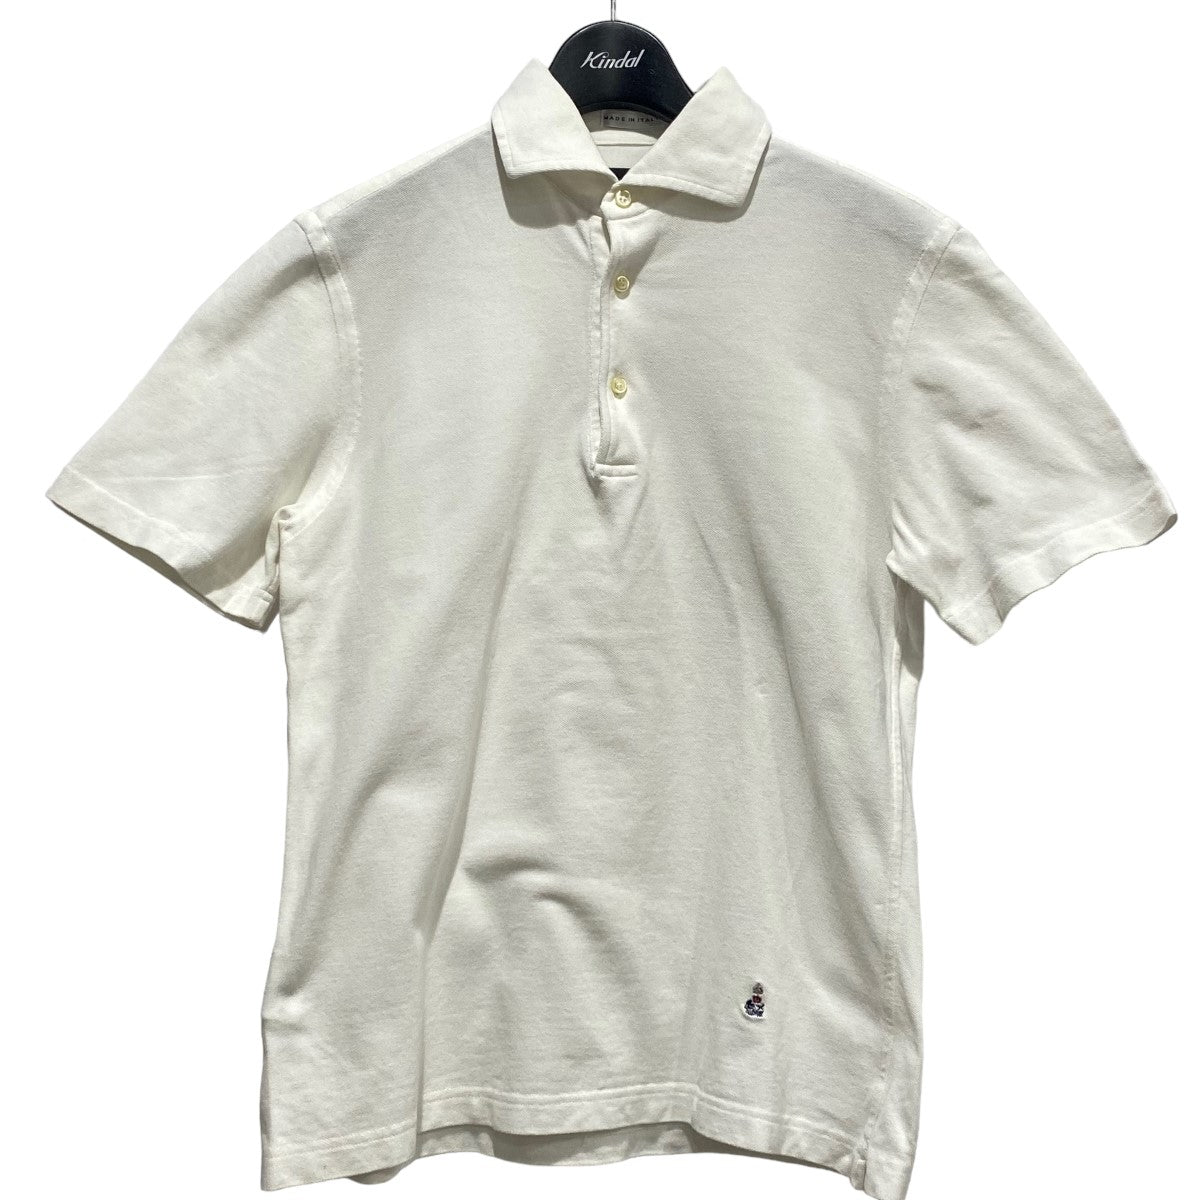 GUY ROVER(ギローバー) ワイドカラーポロシャツ ホワイト サイズ S 